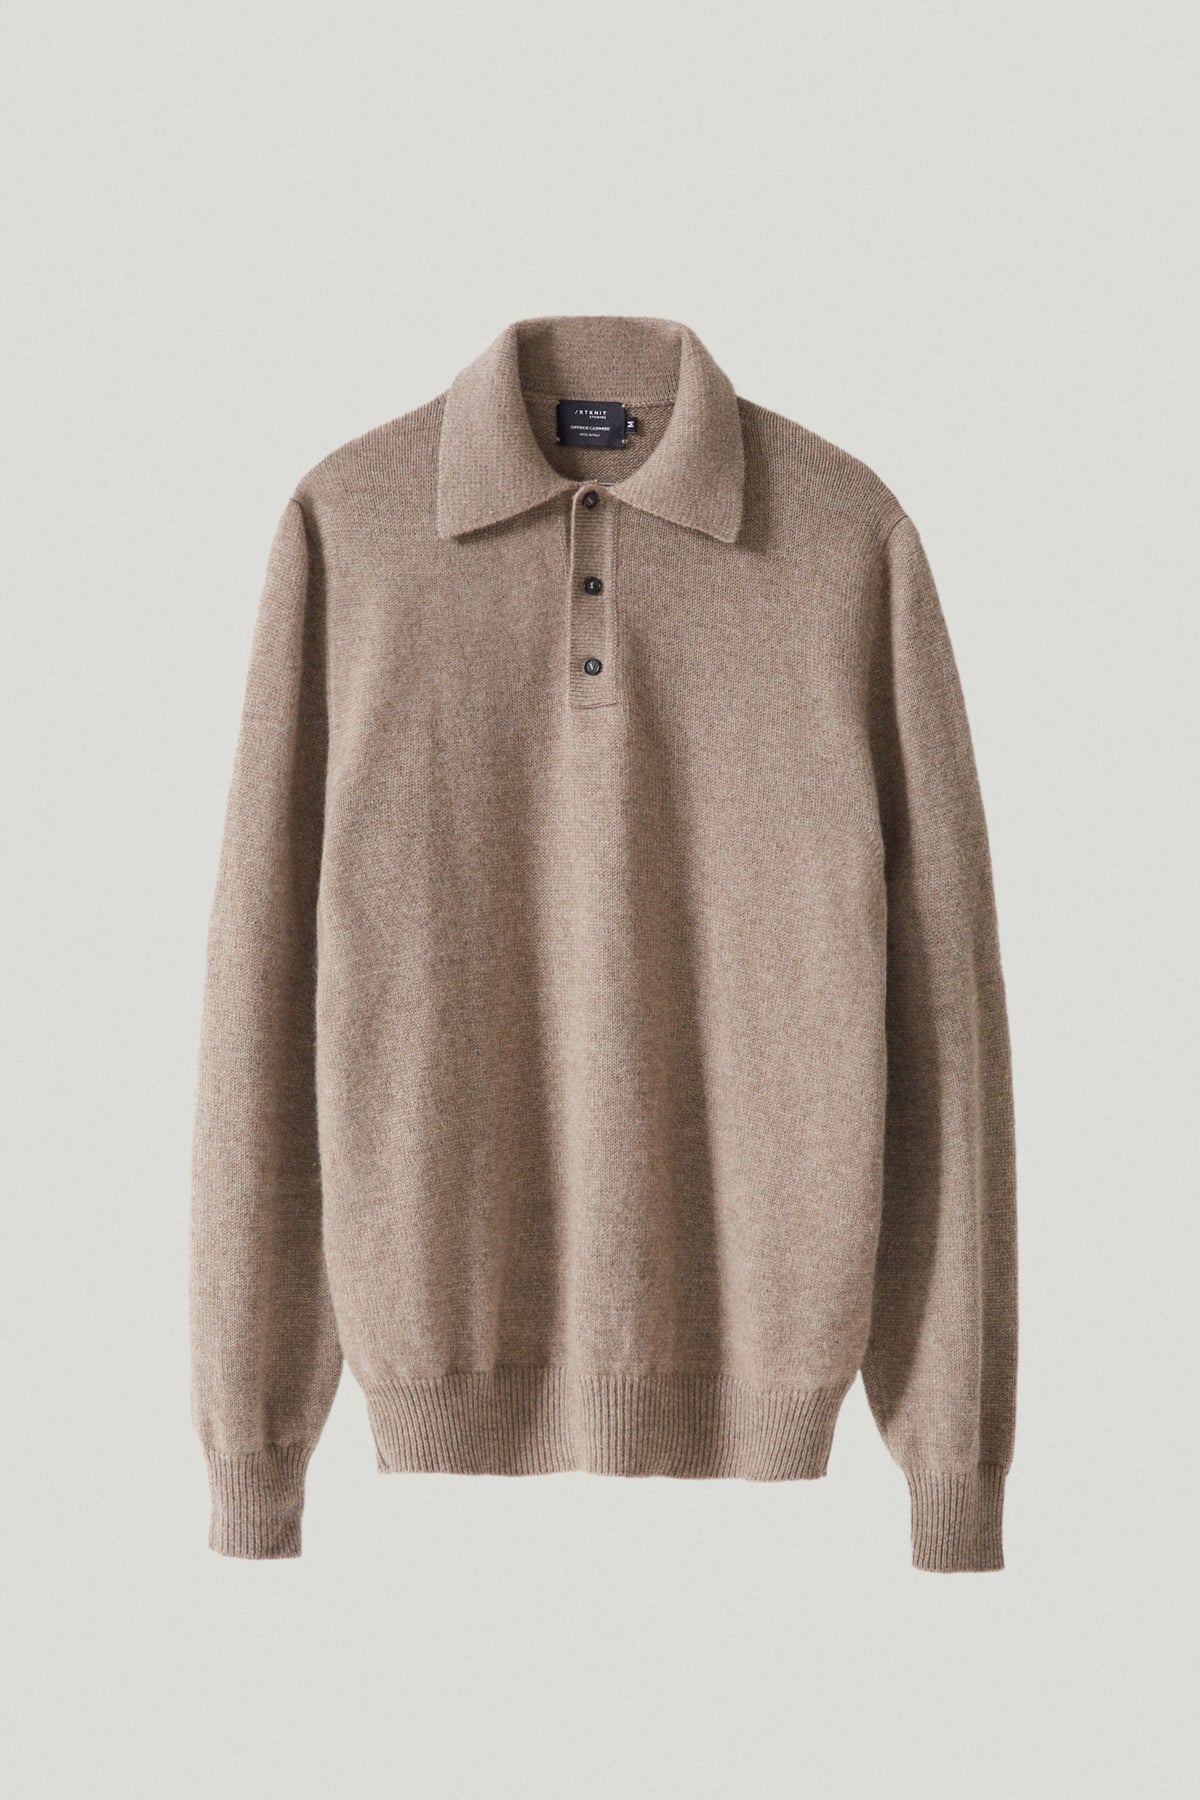 Men's Grey Cotton Crewneck Sweater | Le Alfré